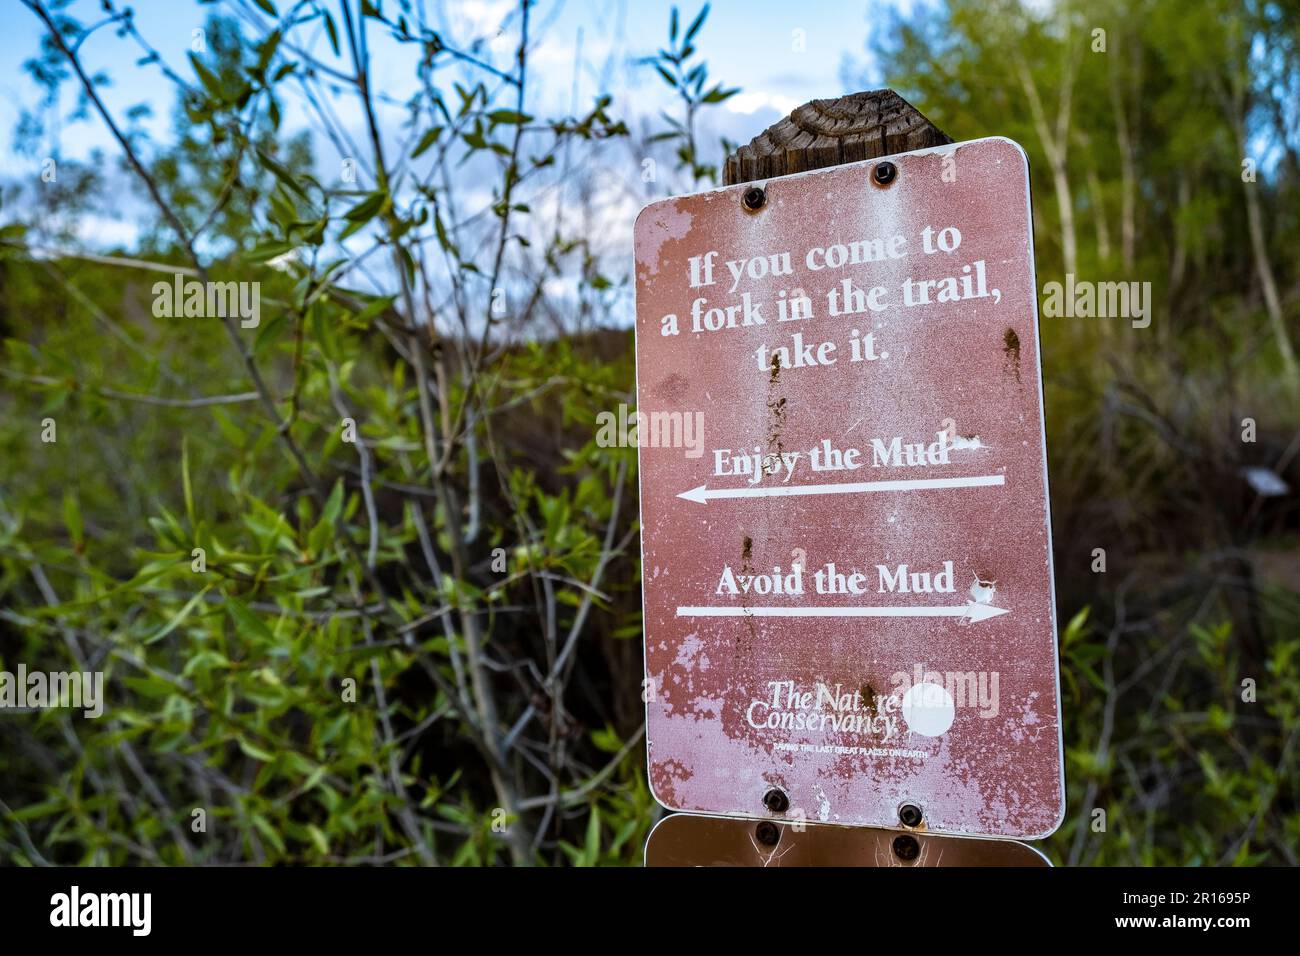 "Wenn Sie zu einer Gabel kommen, nehmen Sie es" -- Schild am Santa Fe Canyon Preserve, Santa Fe, New Mexico, USA Stockfoto